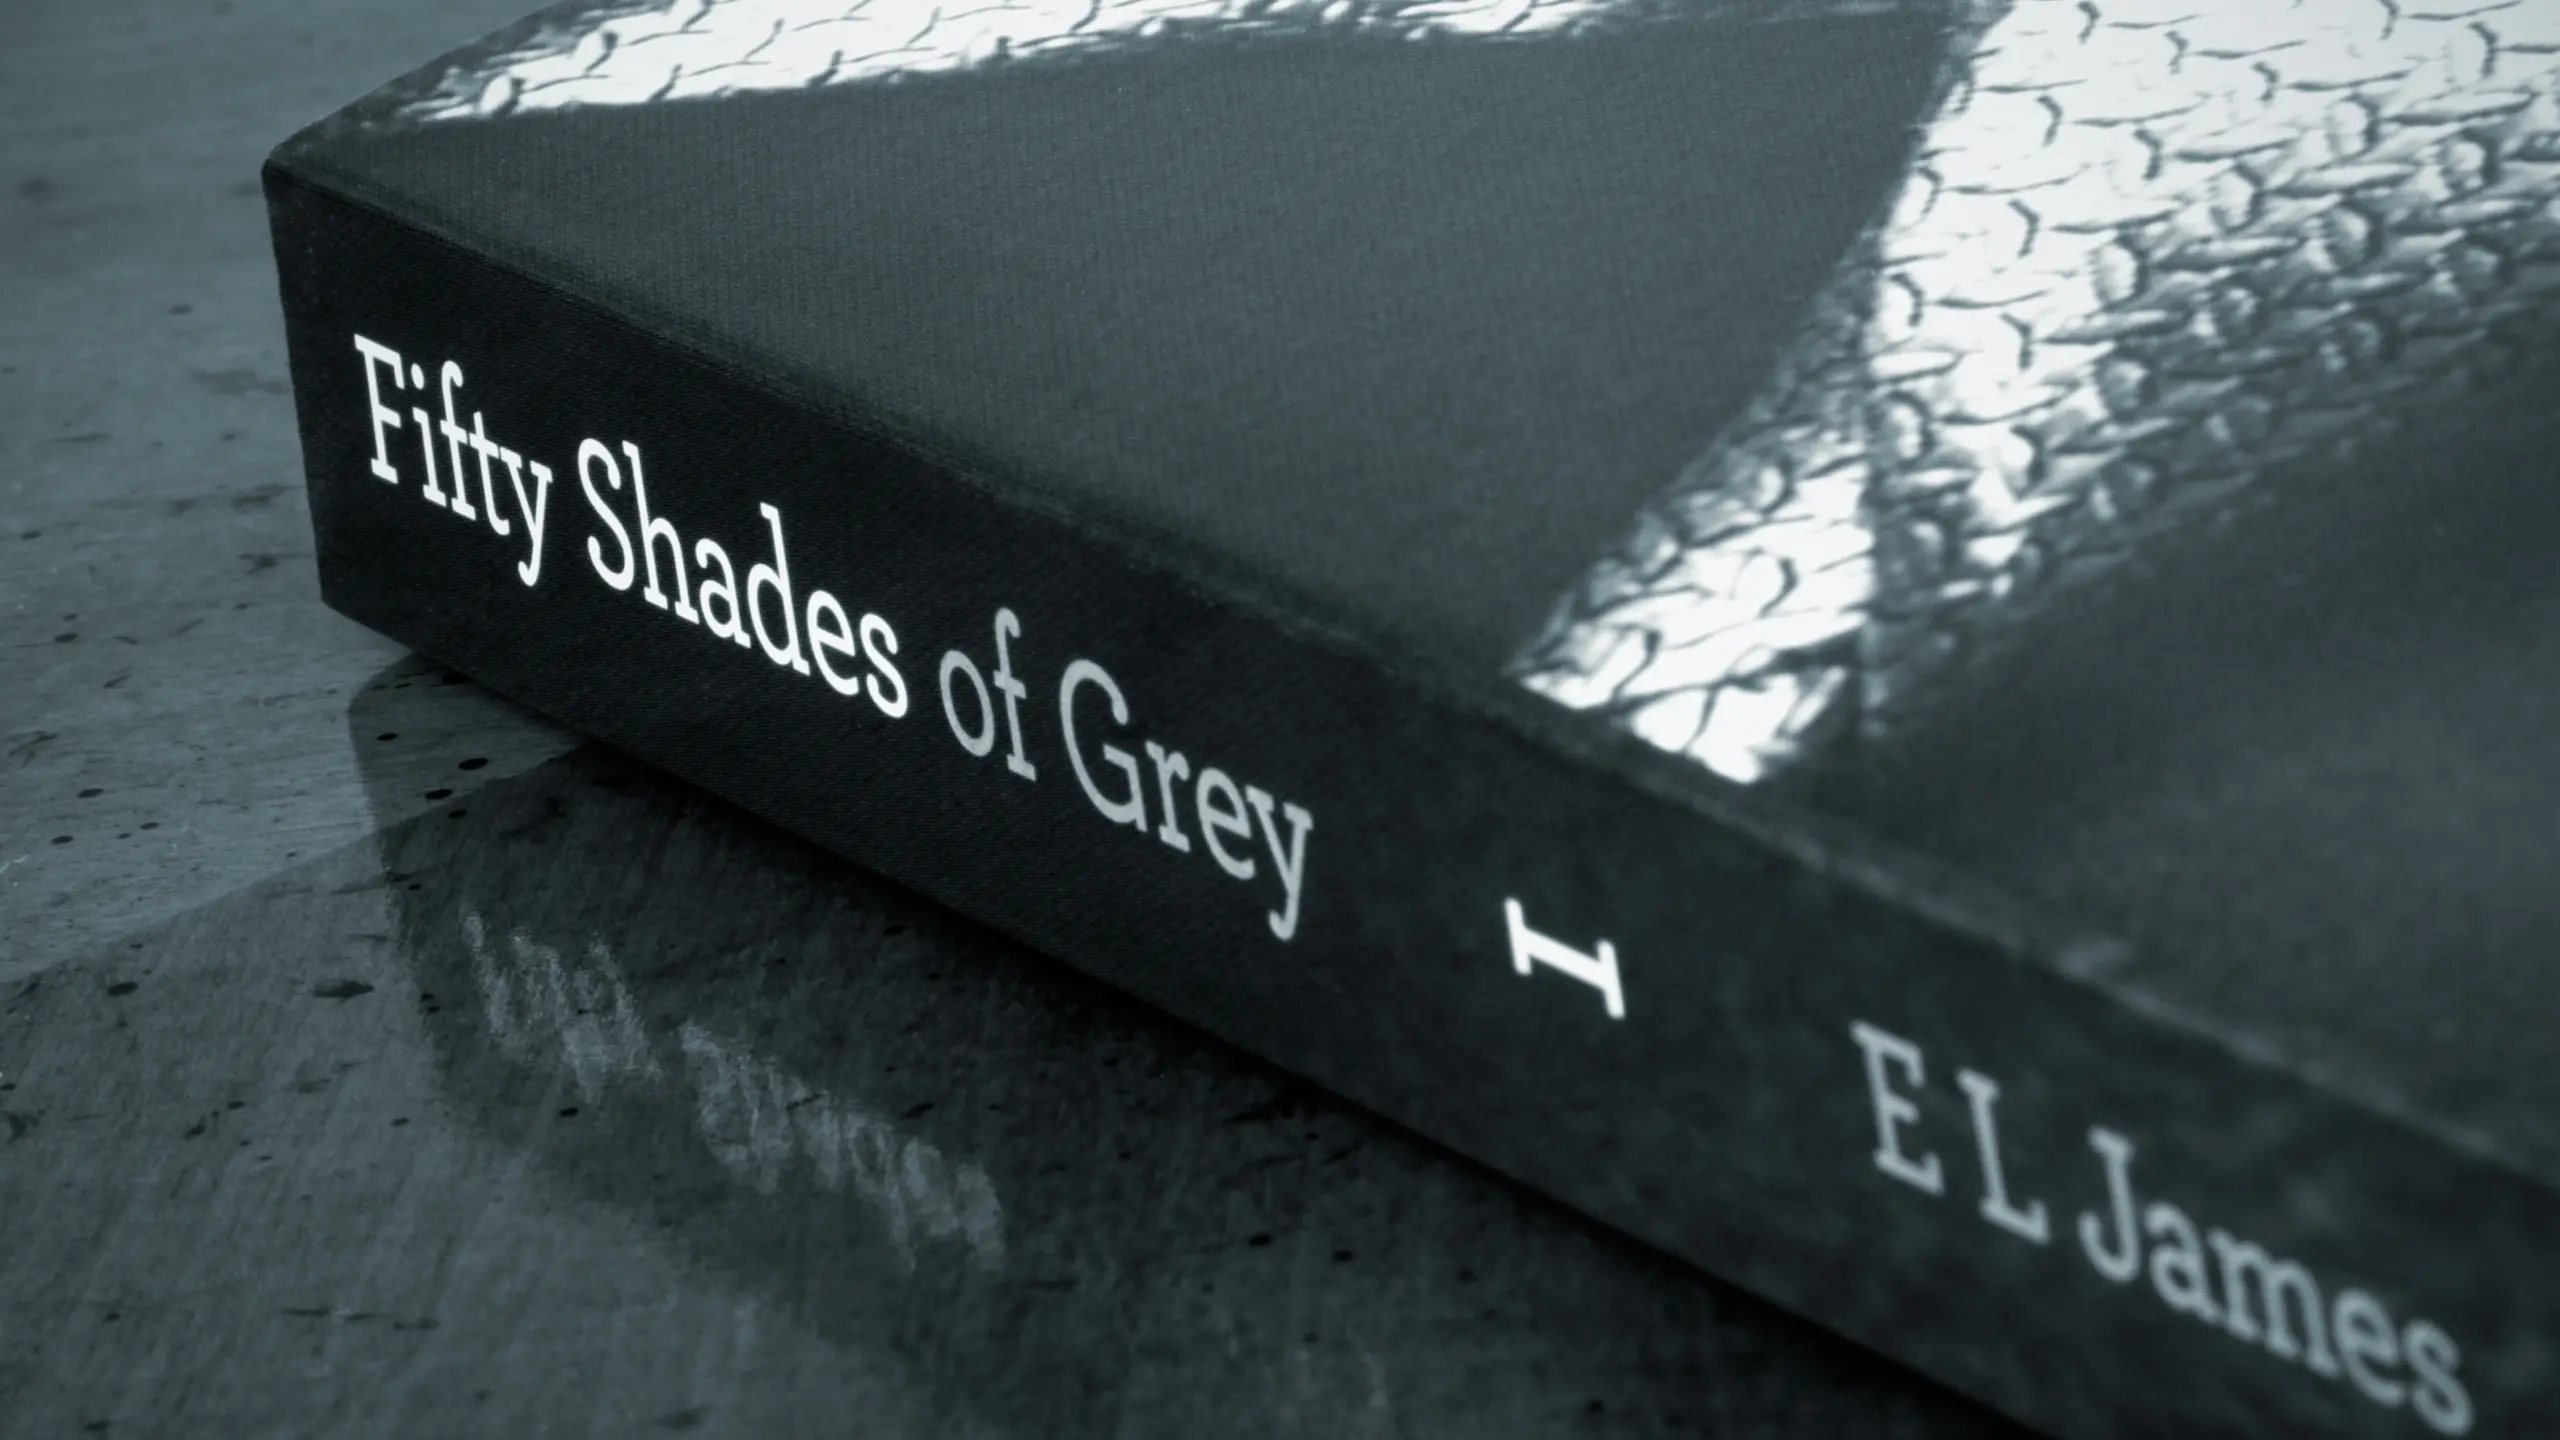 Buch mit dem Titel "Fifty Shades of Grey"